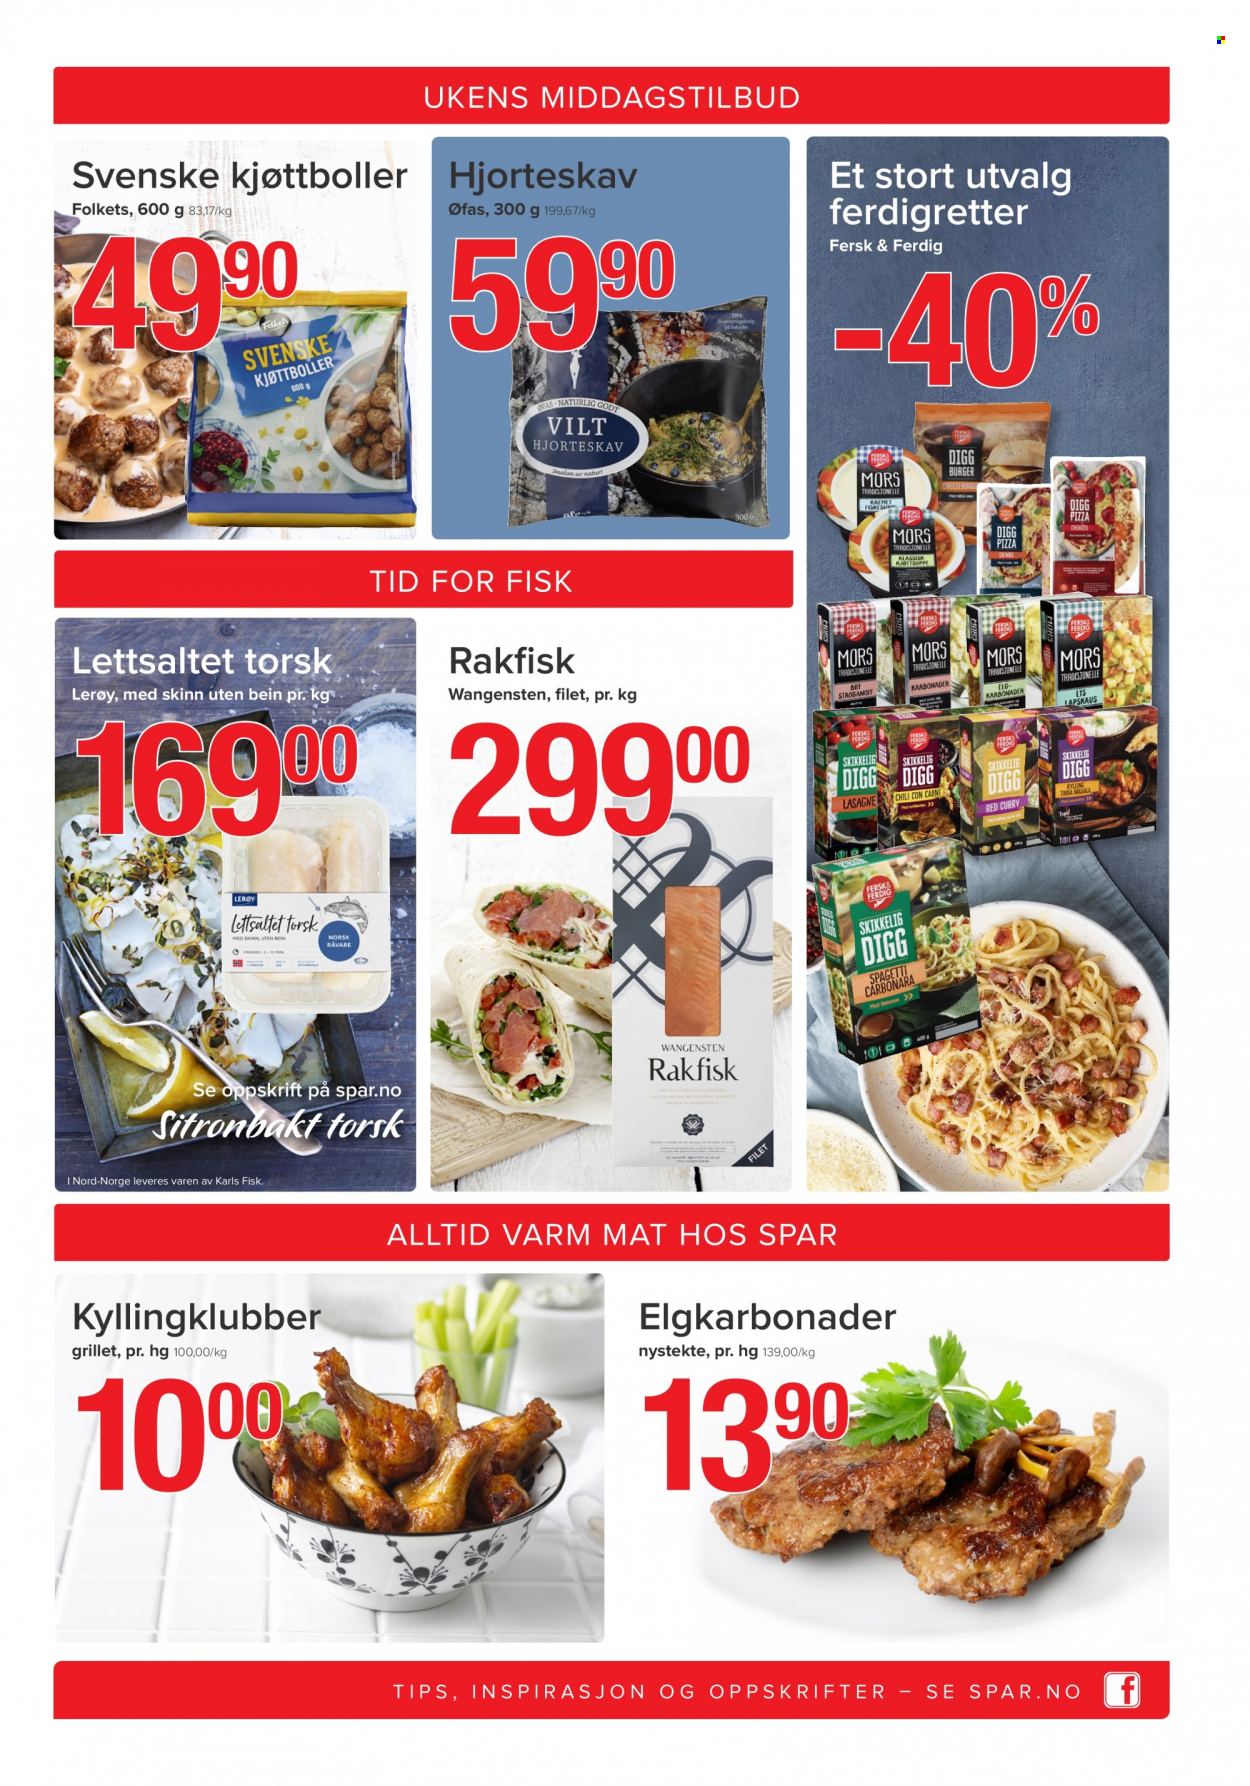 thumbnail - Kundeavis SPAR - 4.10.2021 - 10.10.2021 - Produkter fra tilbudsaviser - kyllingklubber, burger, kjøttboller, fisk, lasagne, pizza, svenske kjøttboller, curry. Side 3.